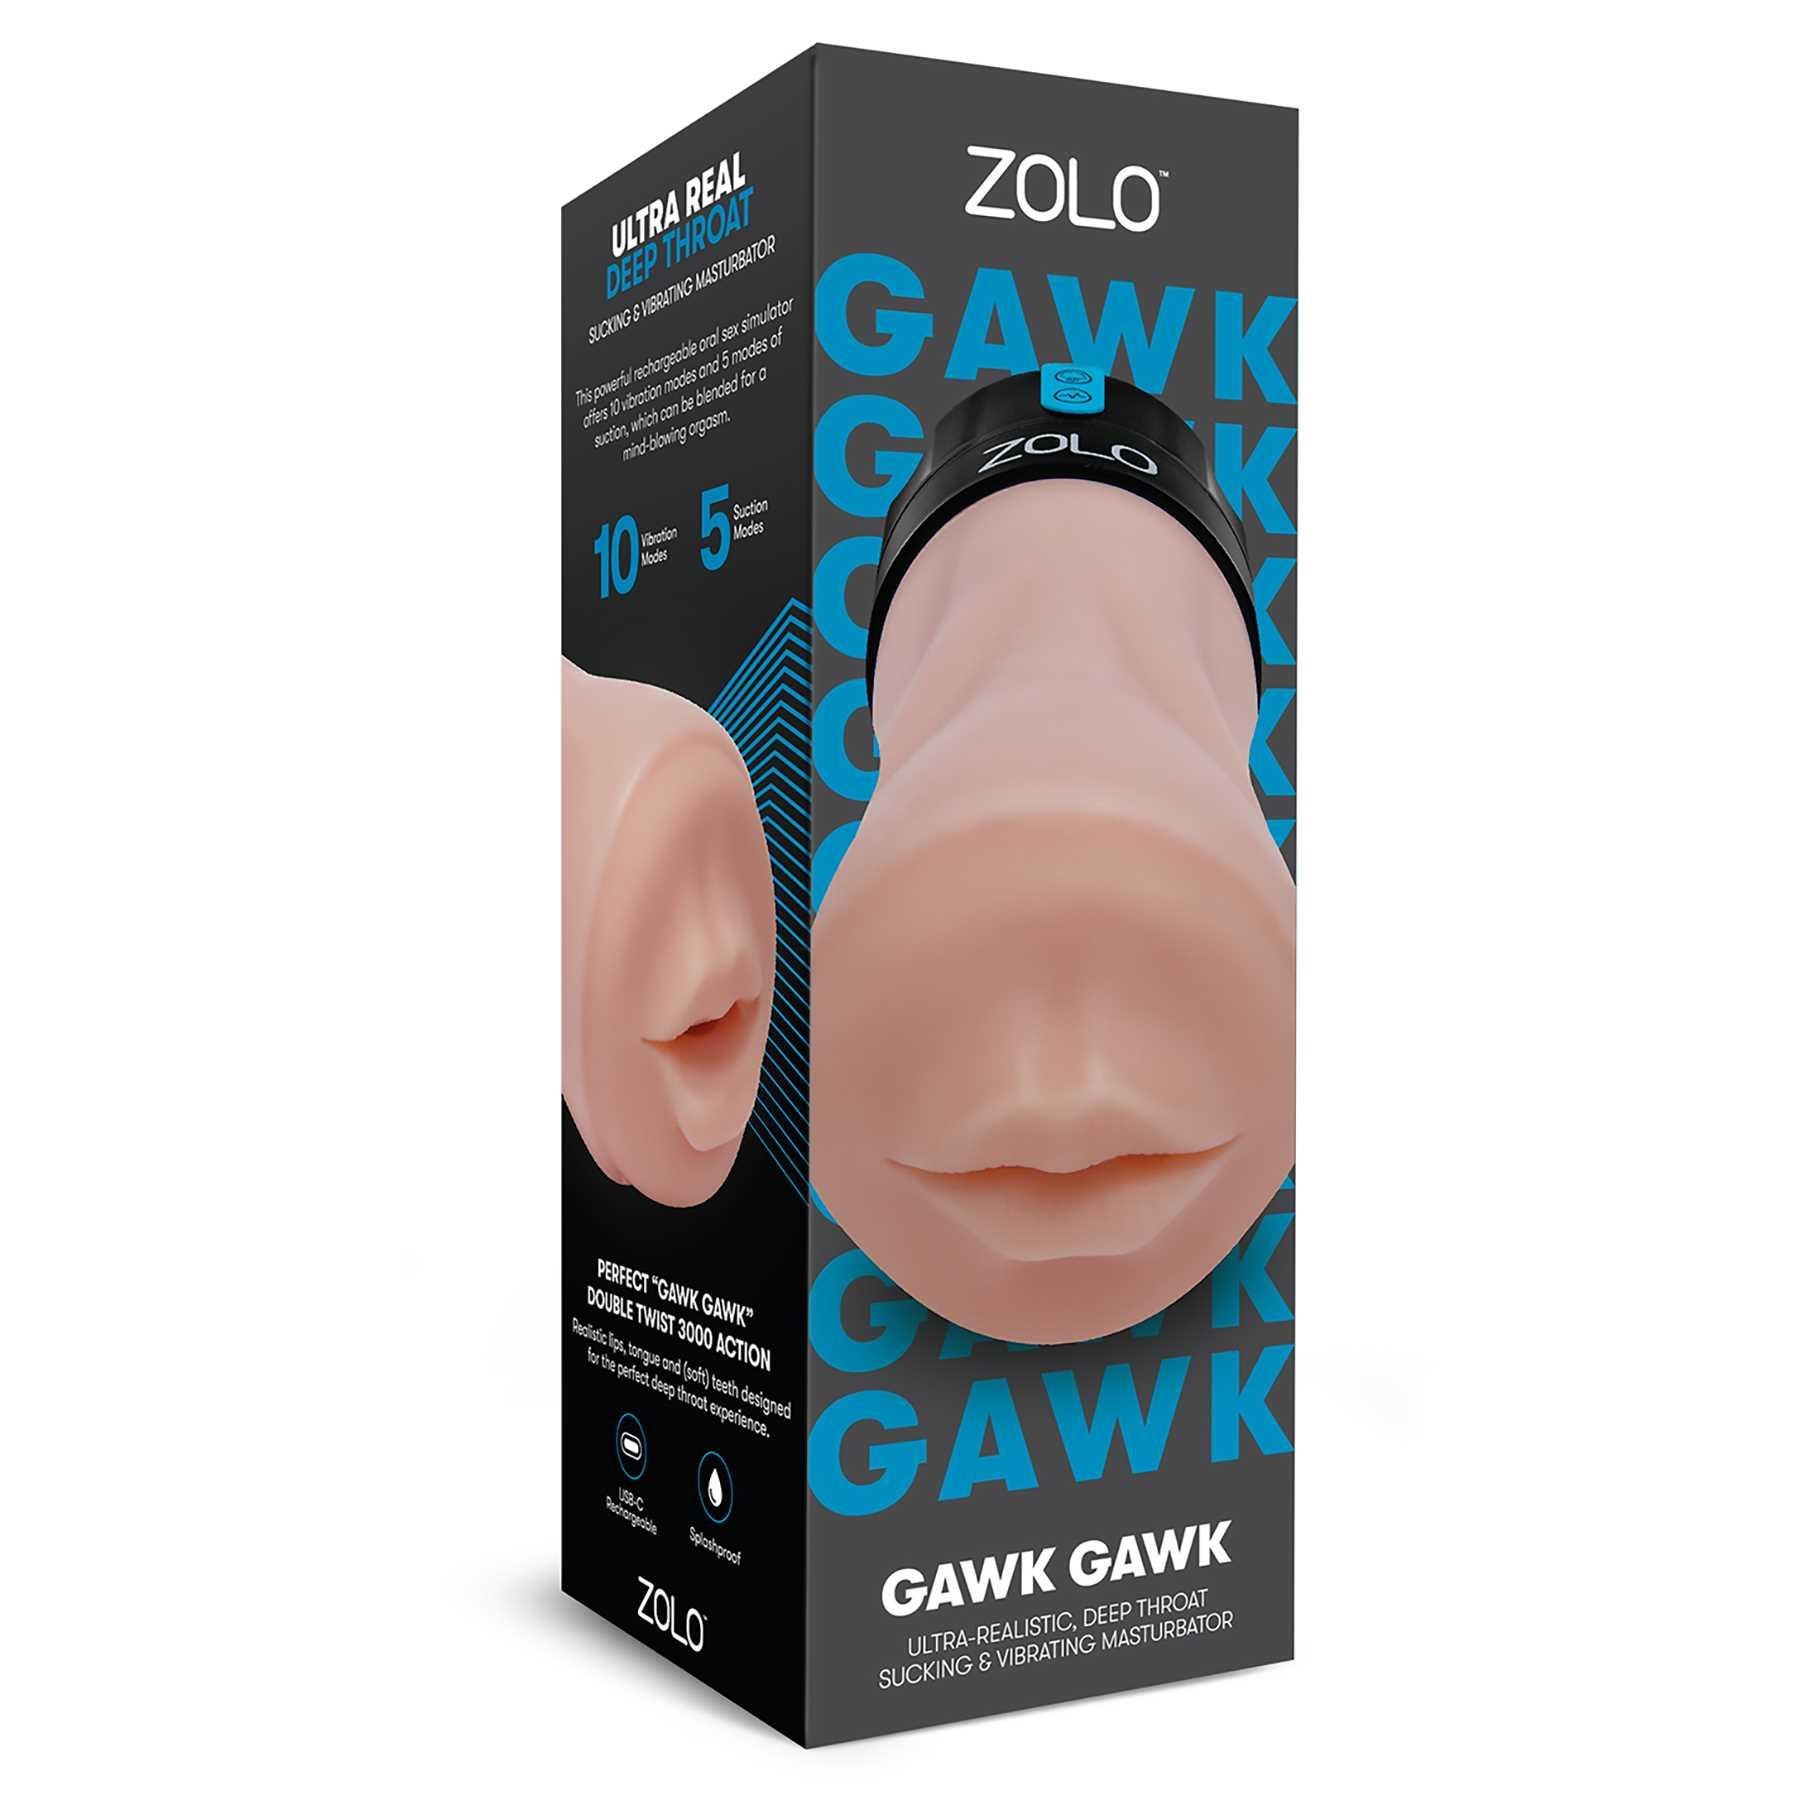 Zolo Gawk Gawk Deep Throat Sucking & Vibrating Masturbator packaging